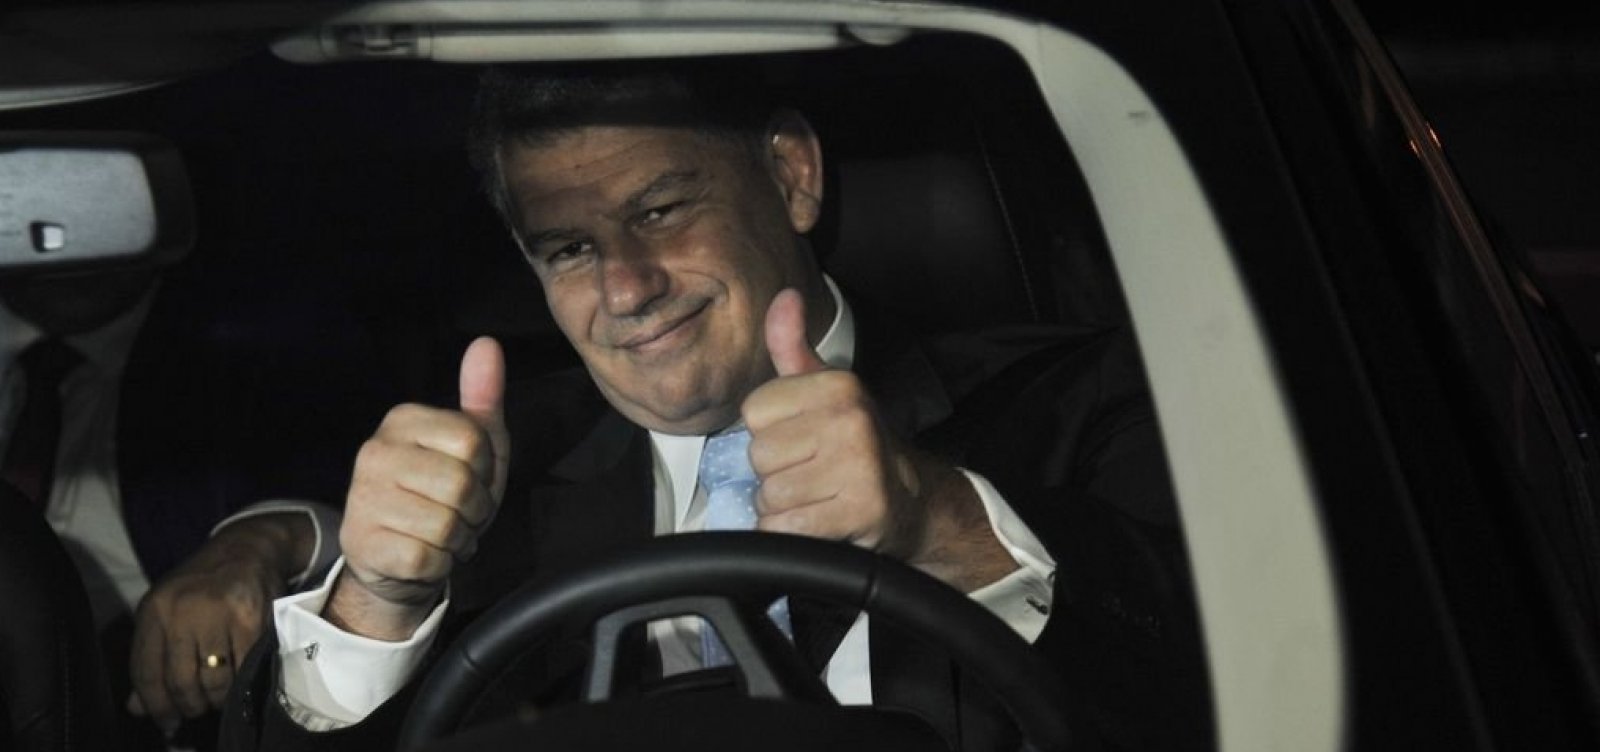 Bebianno diz que Bolsonaro 'faz o que os filhos querem' e 'se mostrou arrogante'